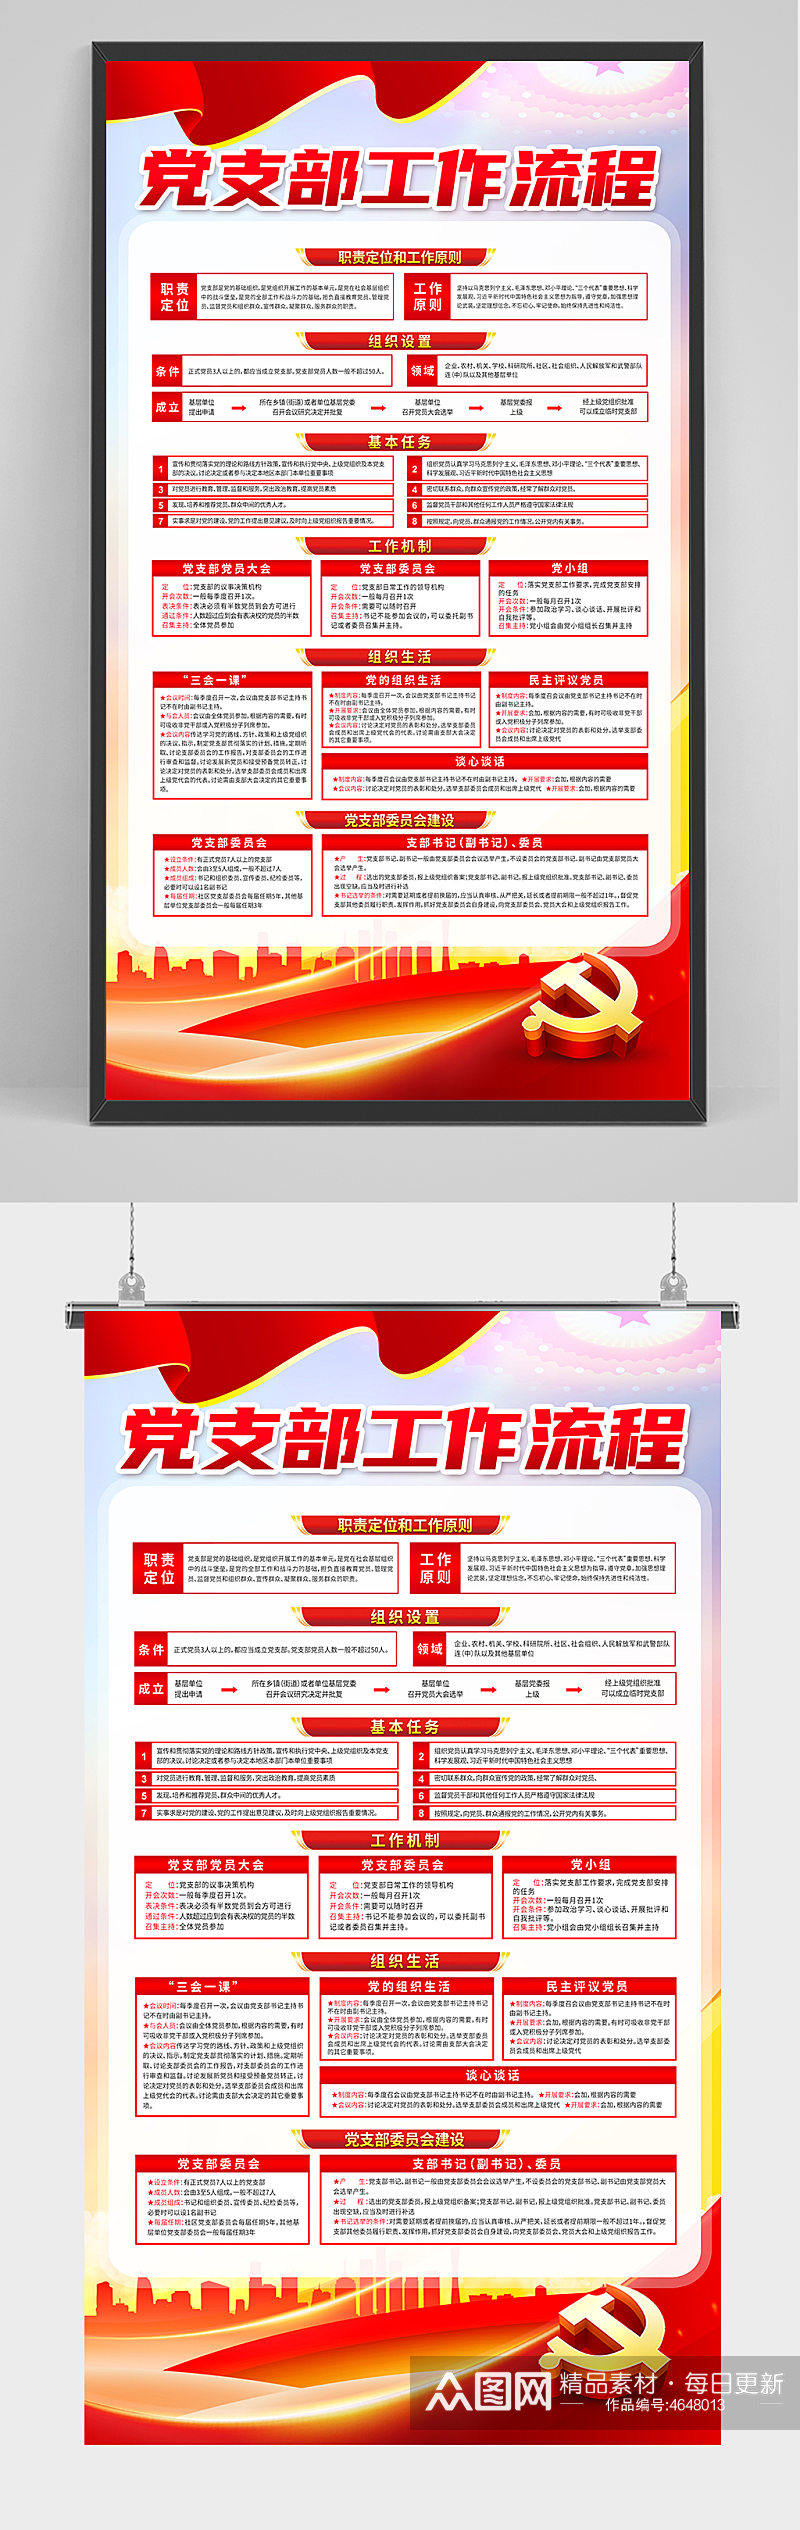 红色党支部工作挂图流程图党建展板海报素材